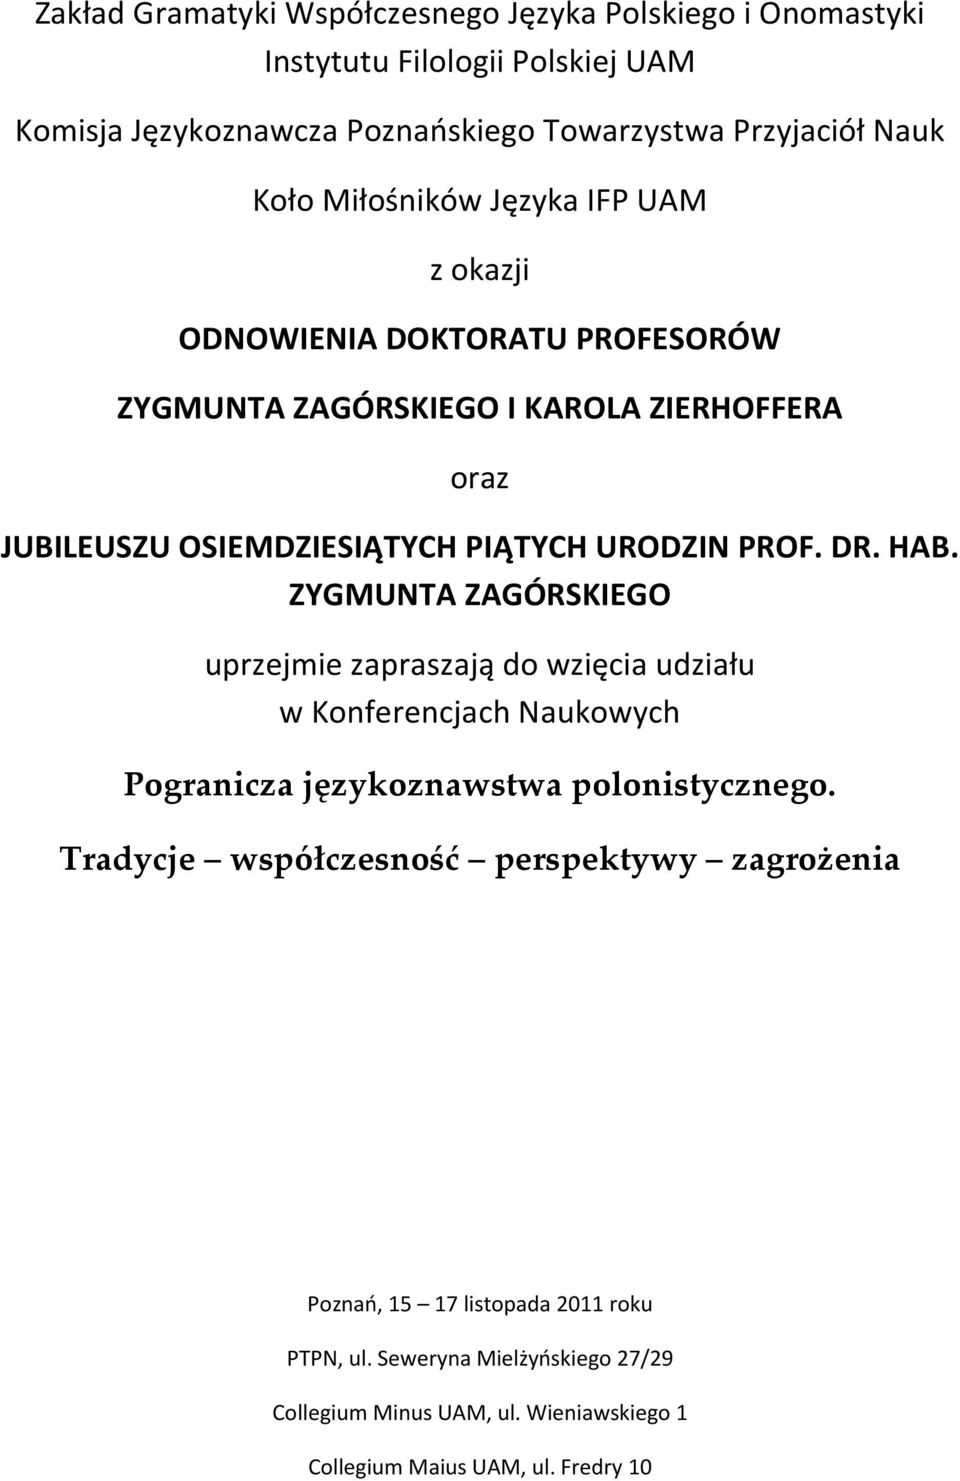 DR. HAB. ZYGMUNTA ZAGÓRSKIEGO uprzejmie zapraszają do wzięcia udziału w Konferencjach Naukowych Pogranicza językoznawstwa polonistycznego.